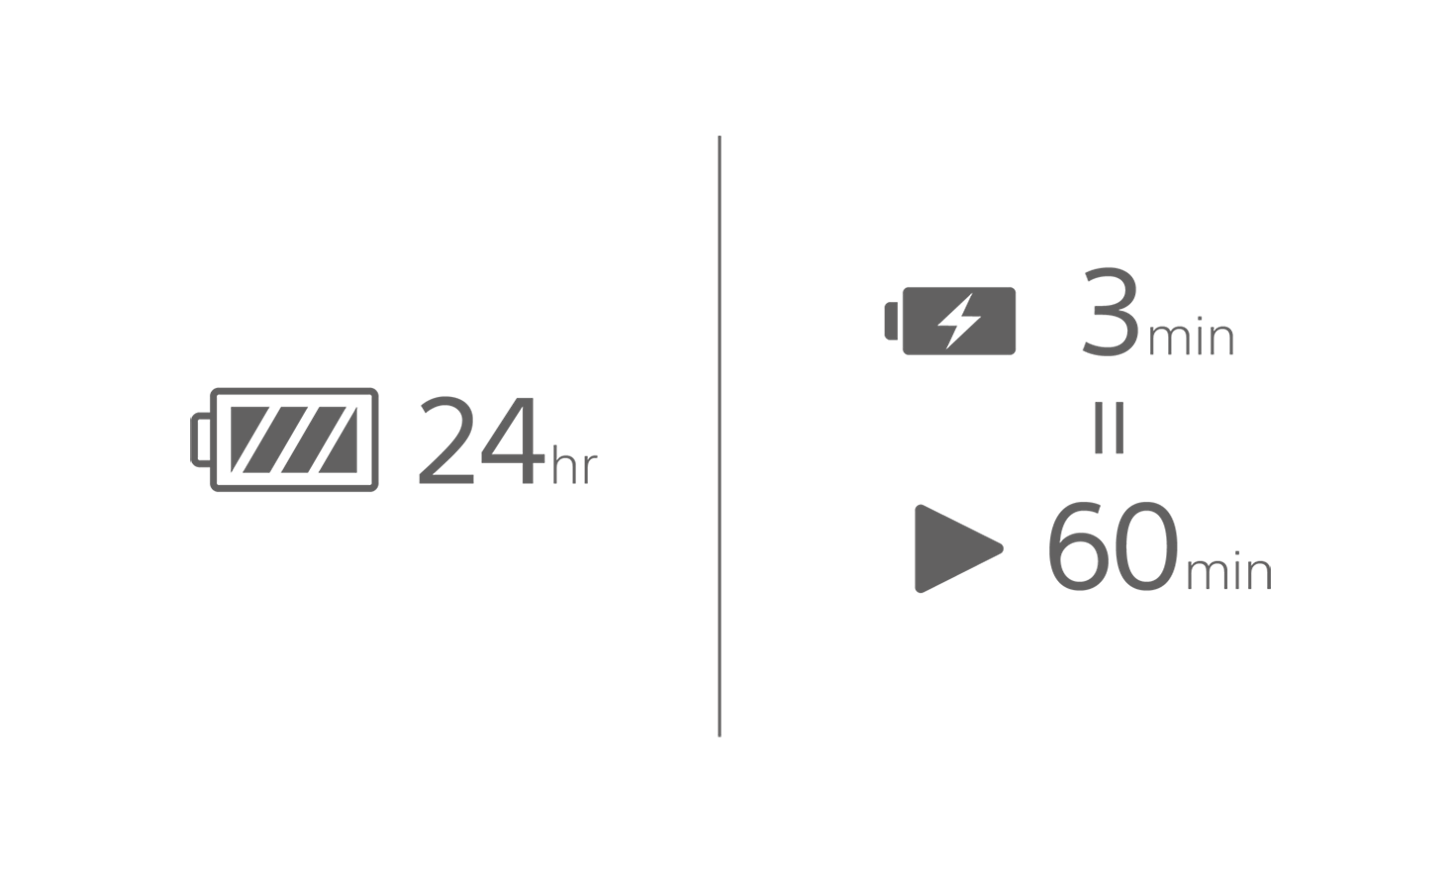 圖中一個電池圖示加註 24 小時字樣，另一個電池有充電符號，上方加註 3 分鐘，還有一個播放圖示加註 60 分鐘